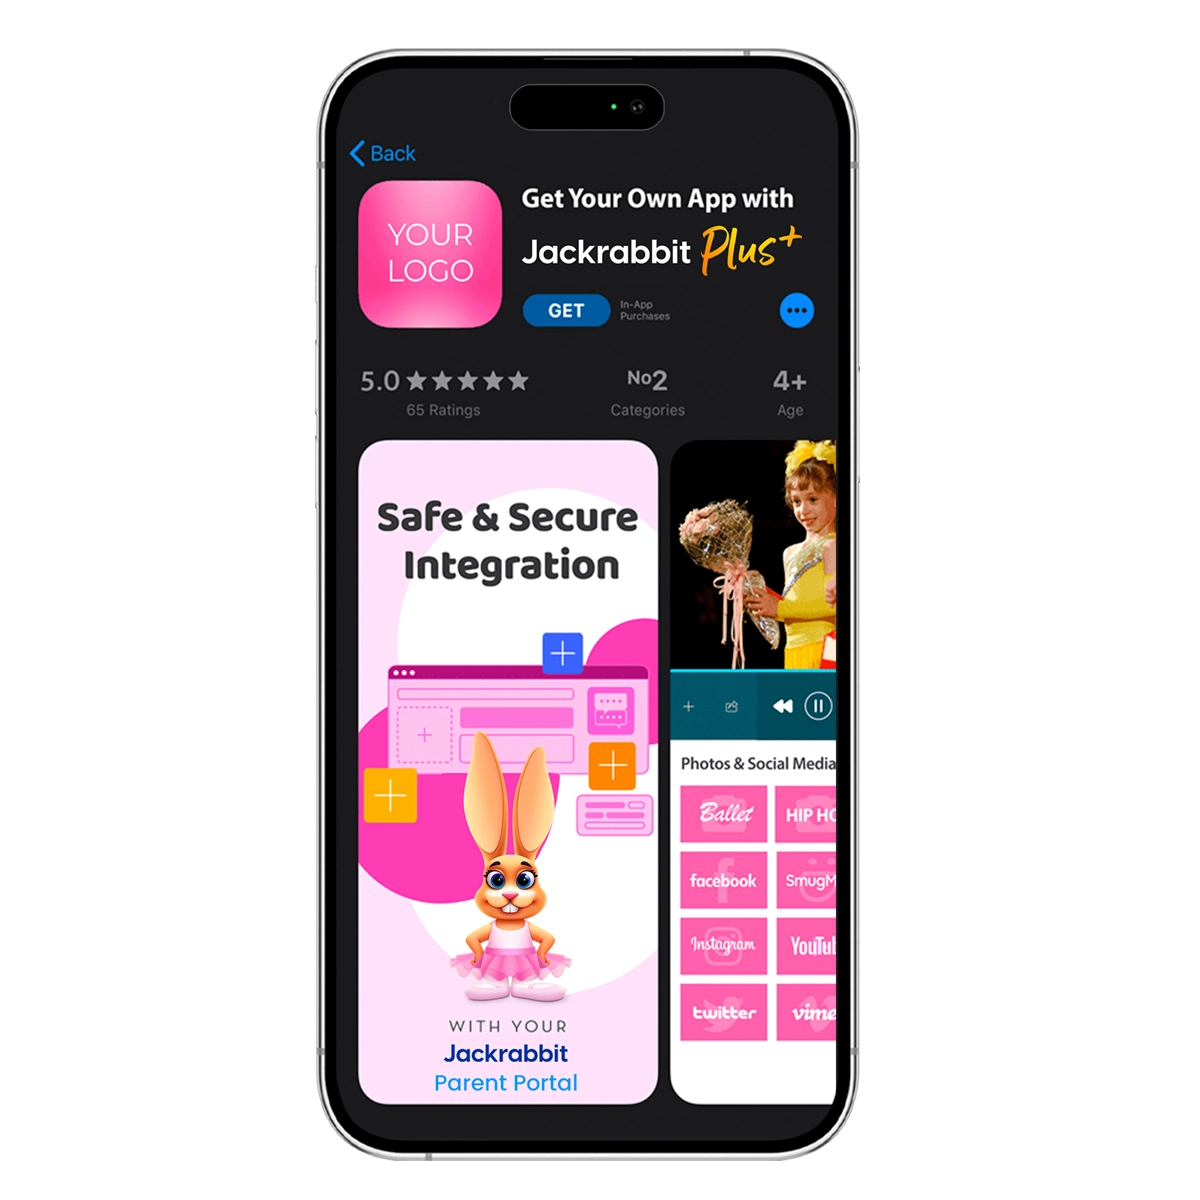 mobile app with jackrabbit plus download screen